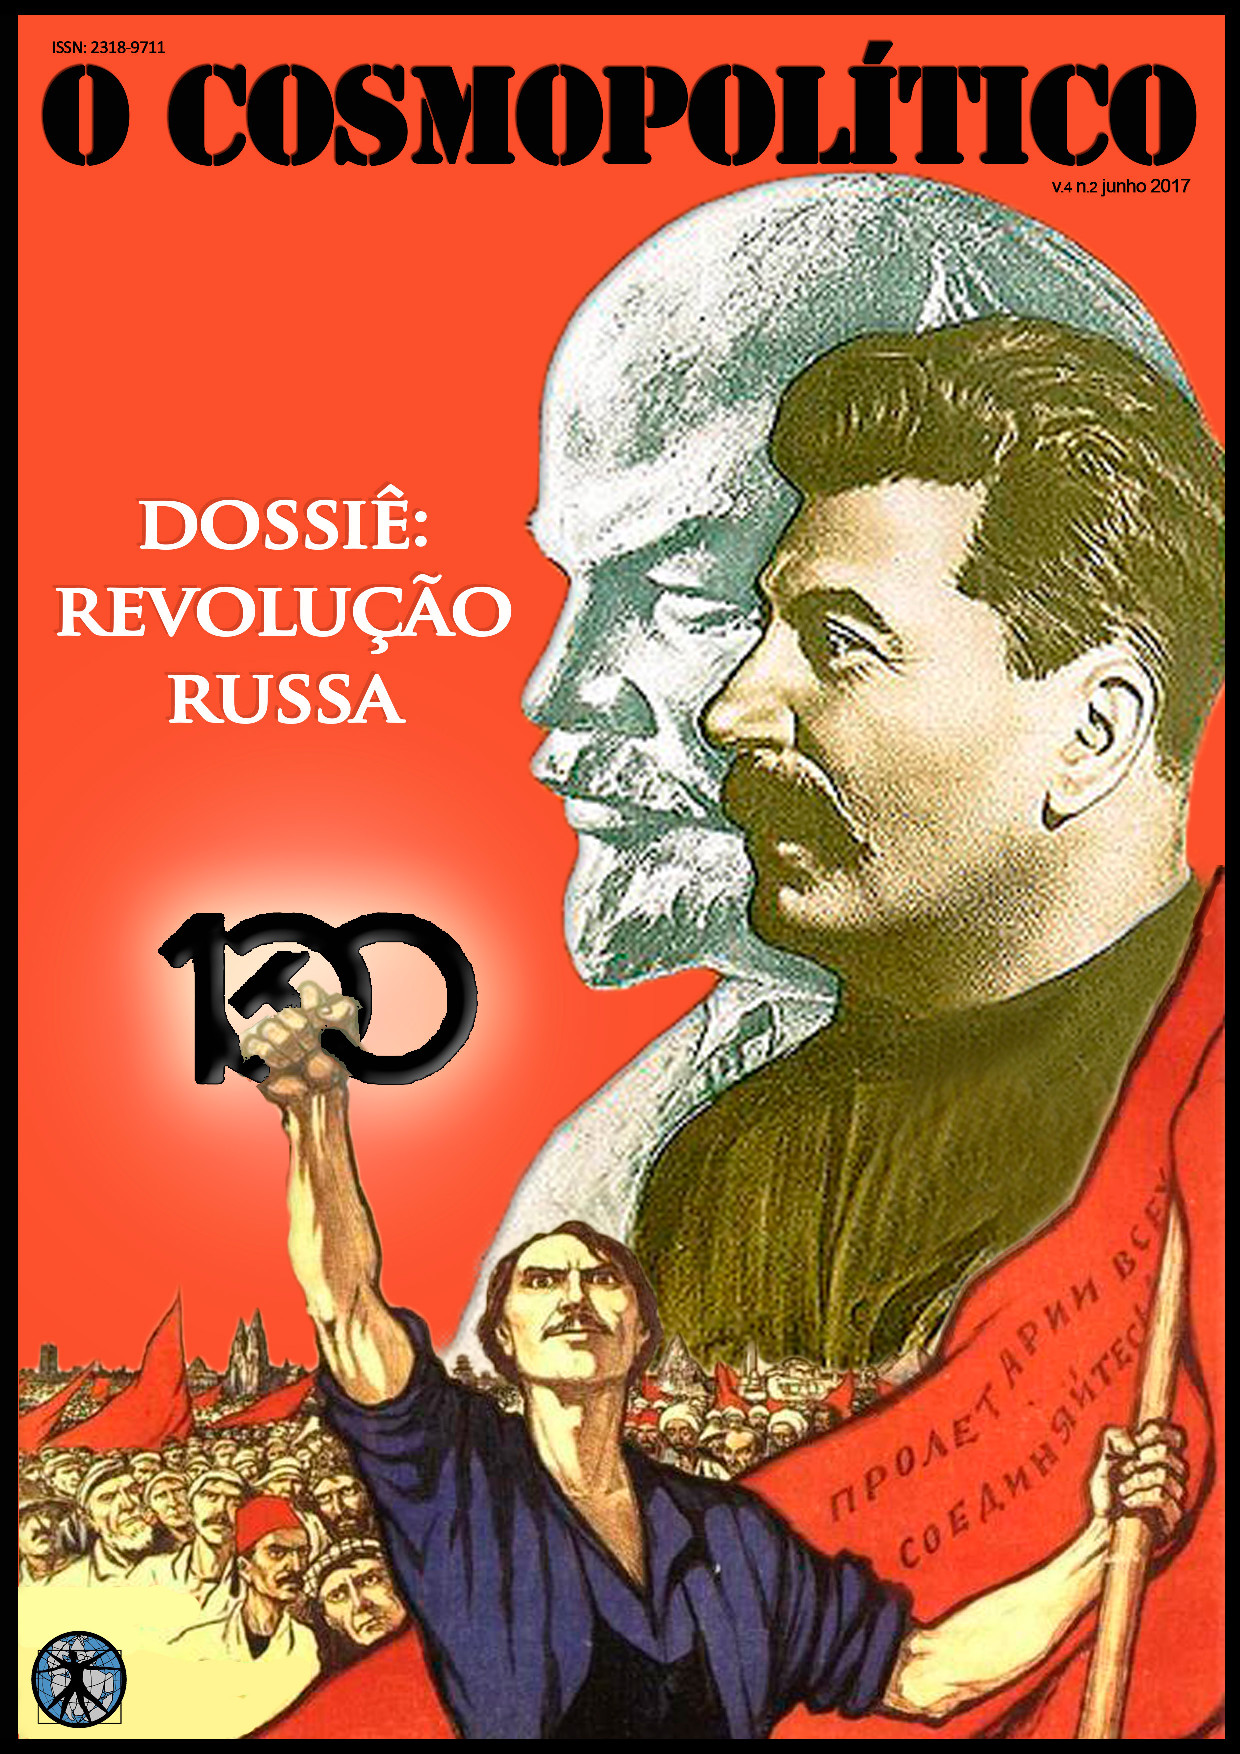 Imagem de capa: Imagem de Josef Stalin com Lenin em preto e branco ao fundo. Na parte inferior da imagem aparece um operário segurando o número 100 com martelo do símbolo comunista.